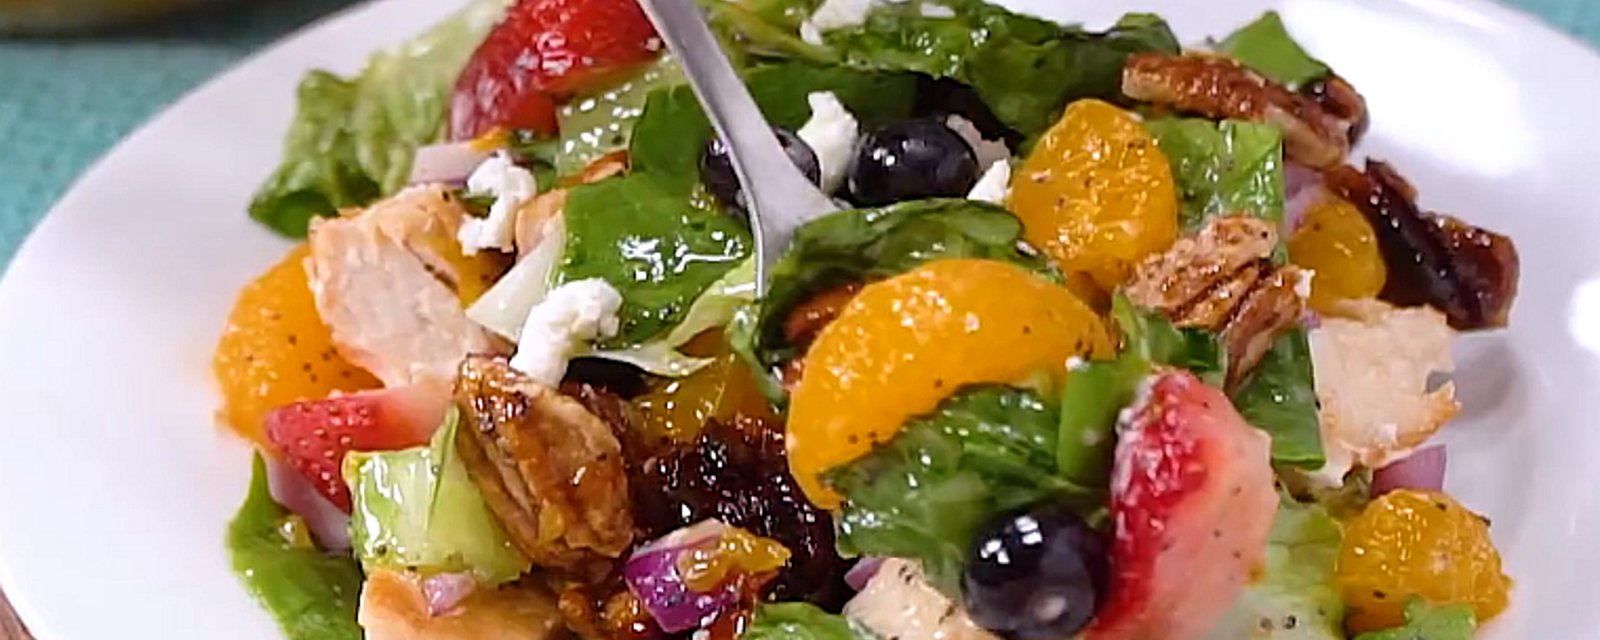 Salade exquise au poulet, aux fraises et aux pacanes confites